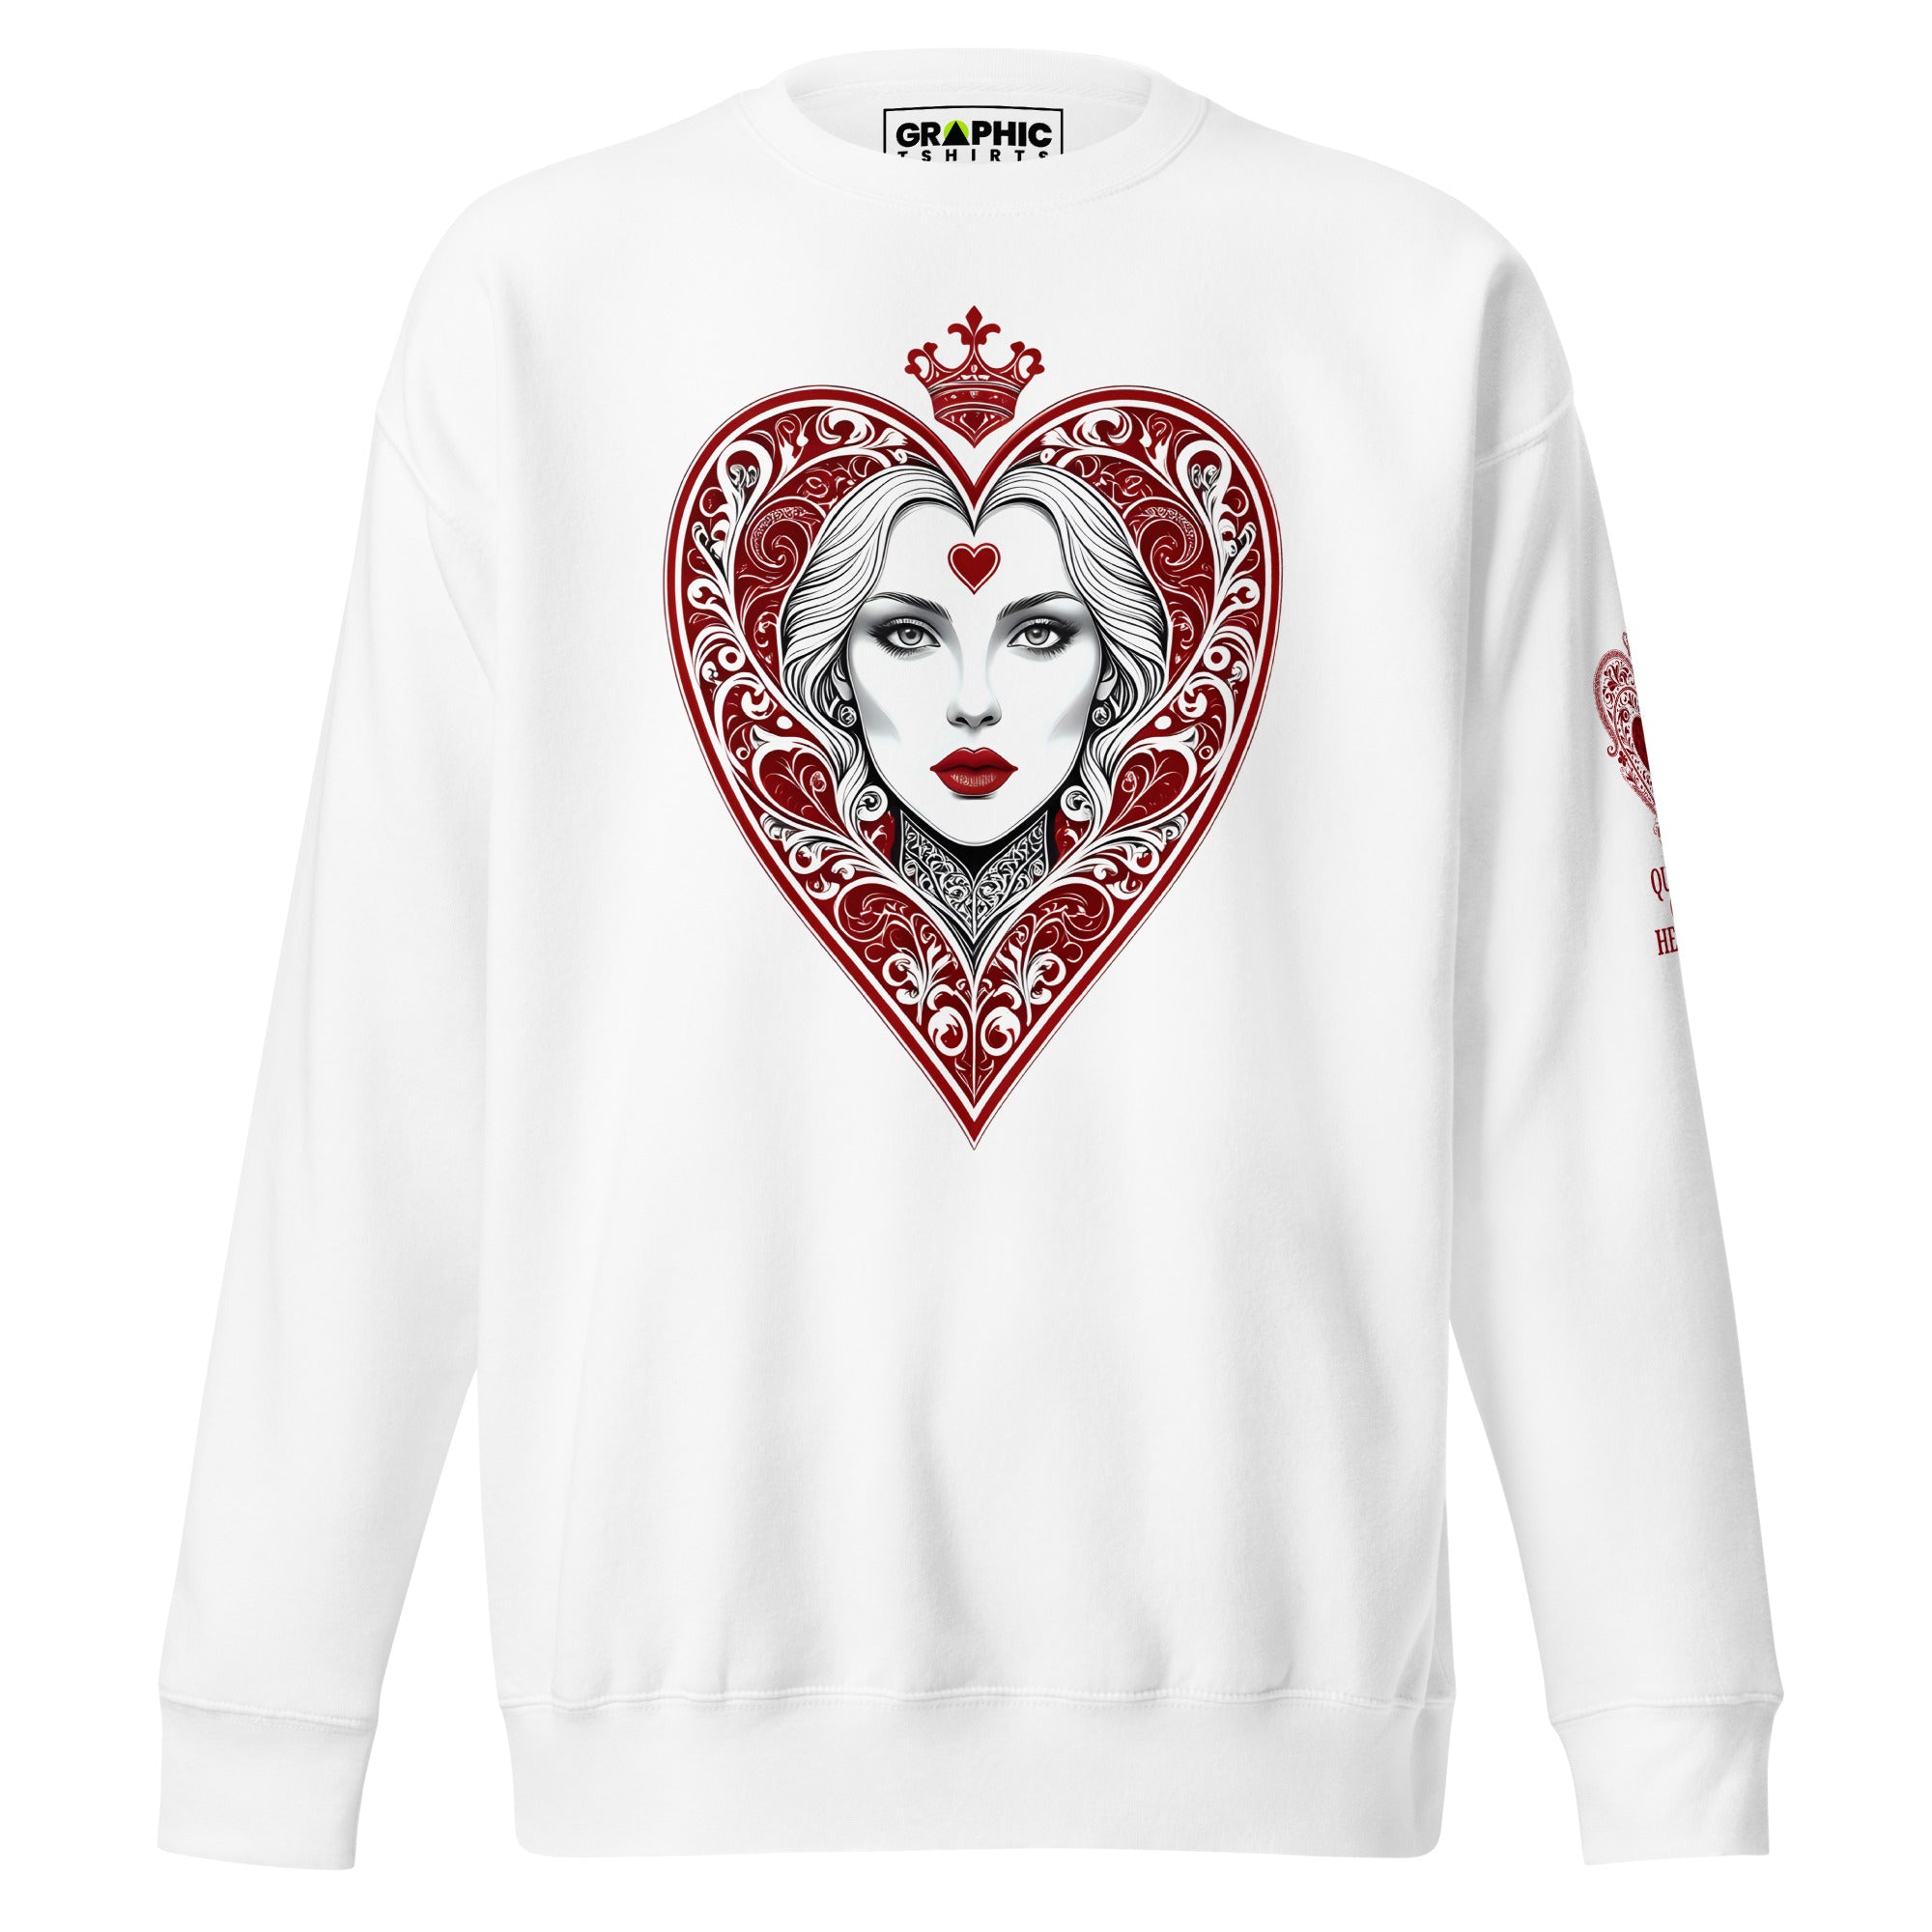 Unisex Premium Sweatshirt - Queen Of Hearts Series v.29